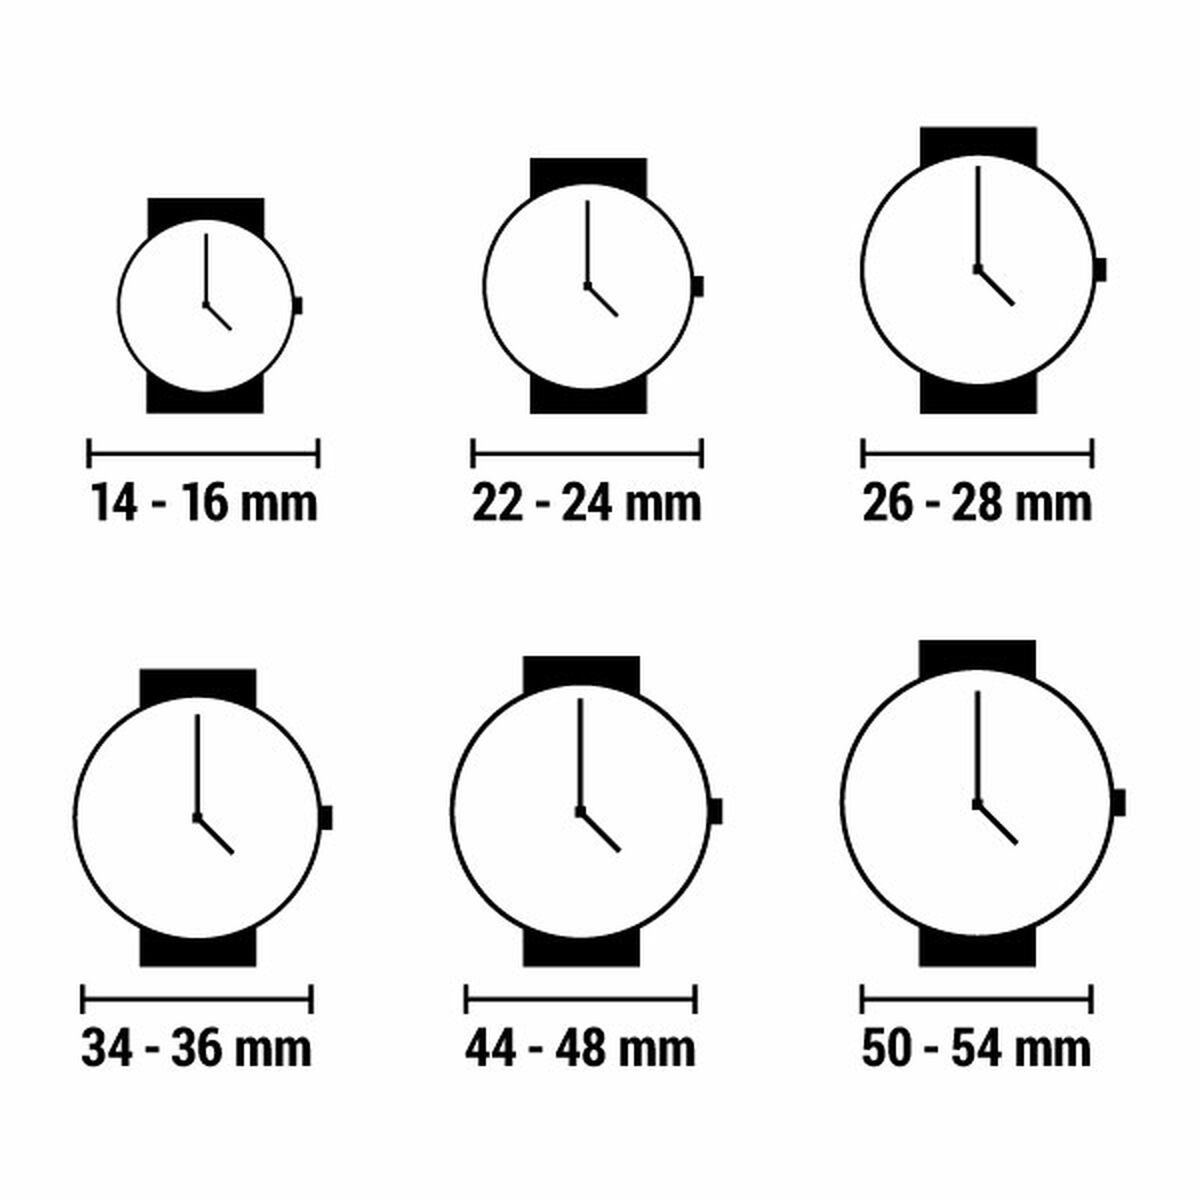 Horloge Dames Casio COLLECTION Zwart (Ø 25 mm)